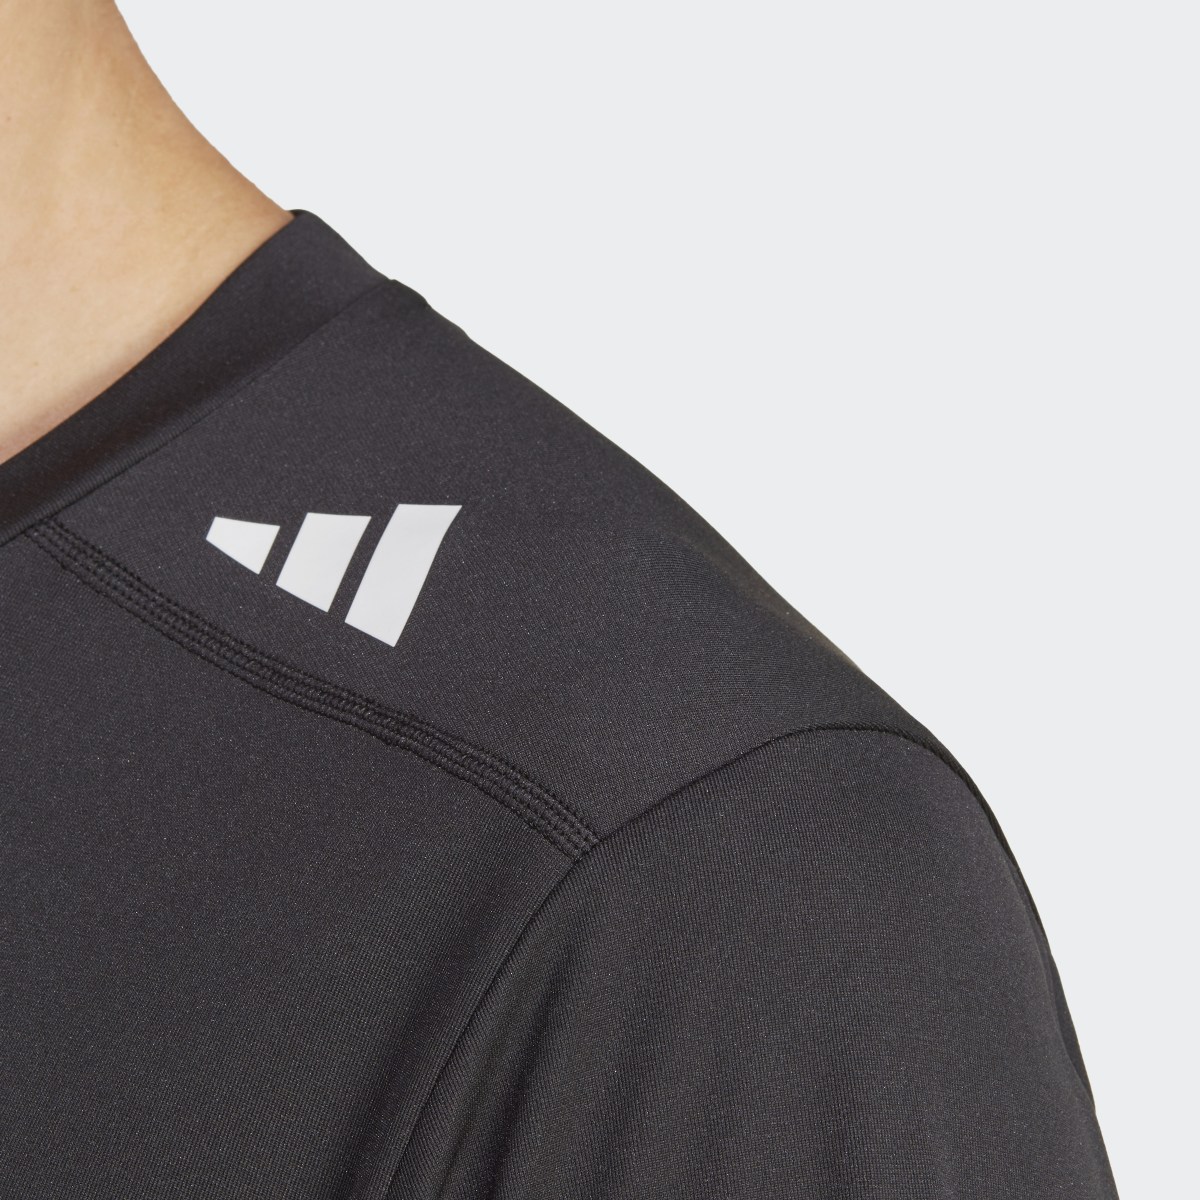 Adidas T-shirt de Running Made to be Remade. 6